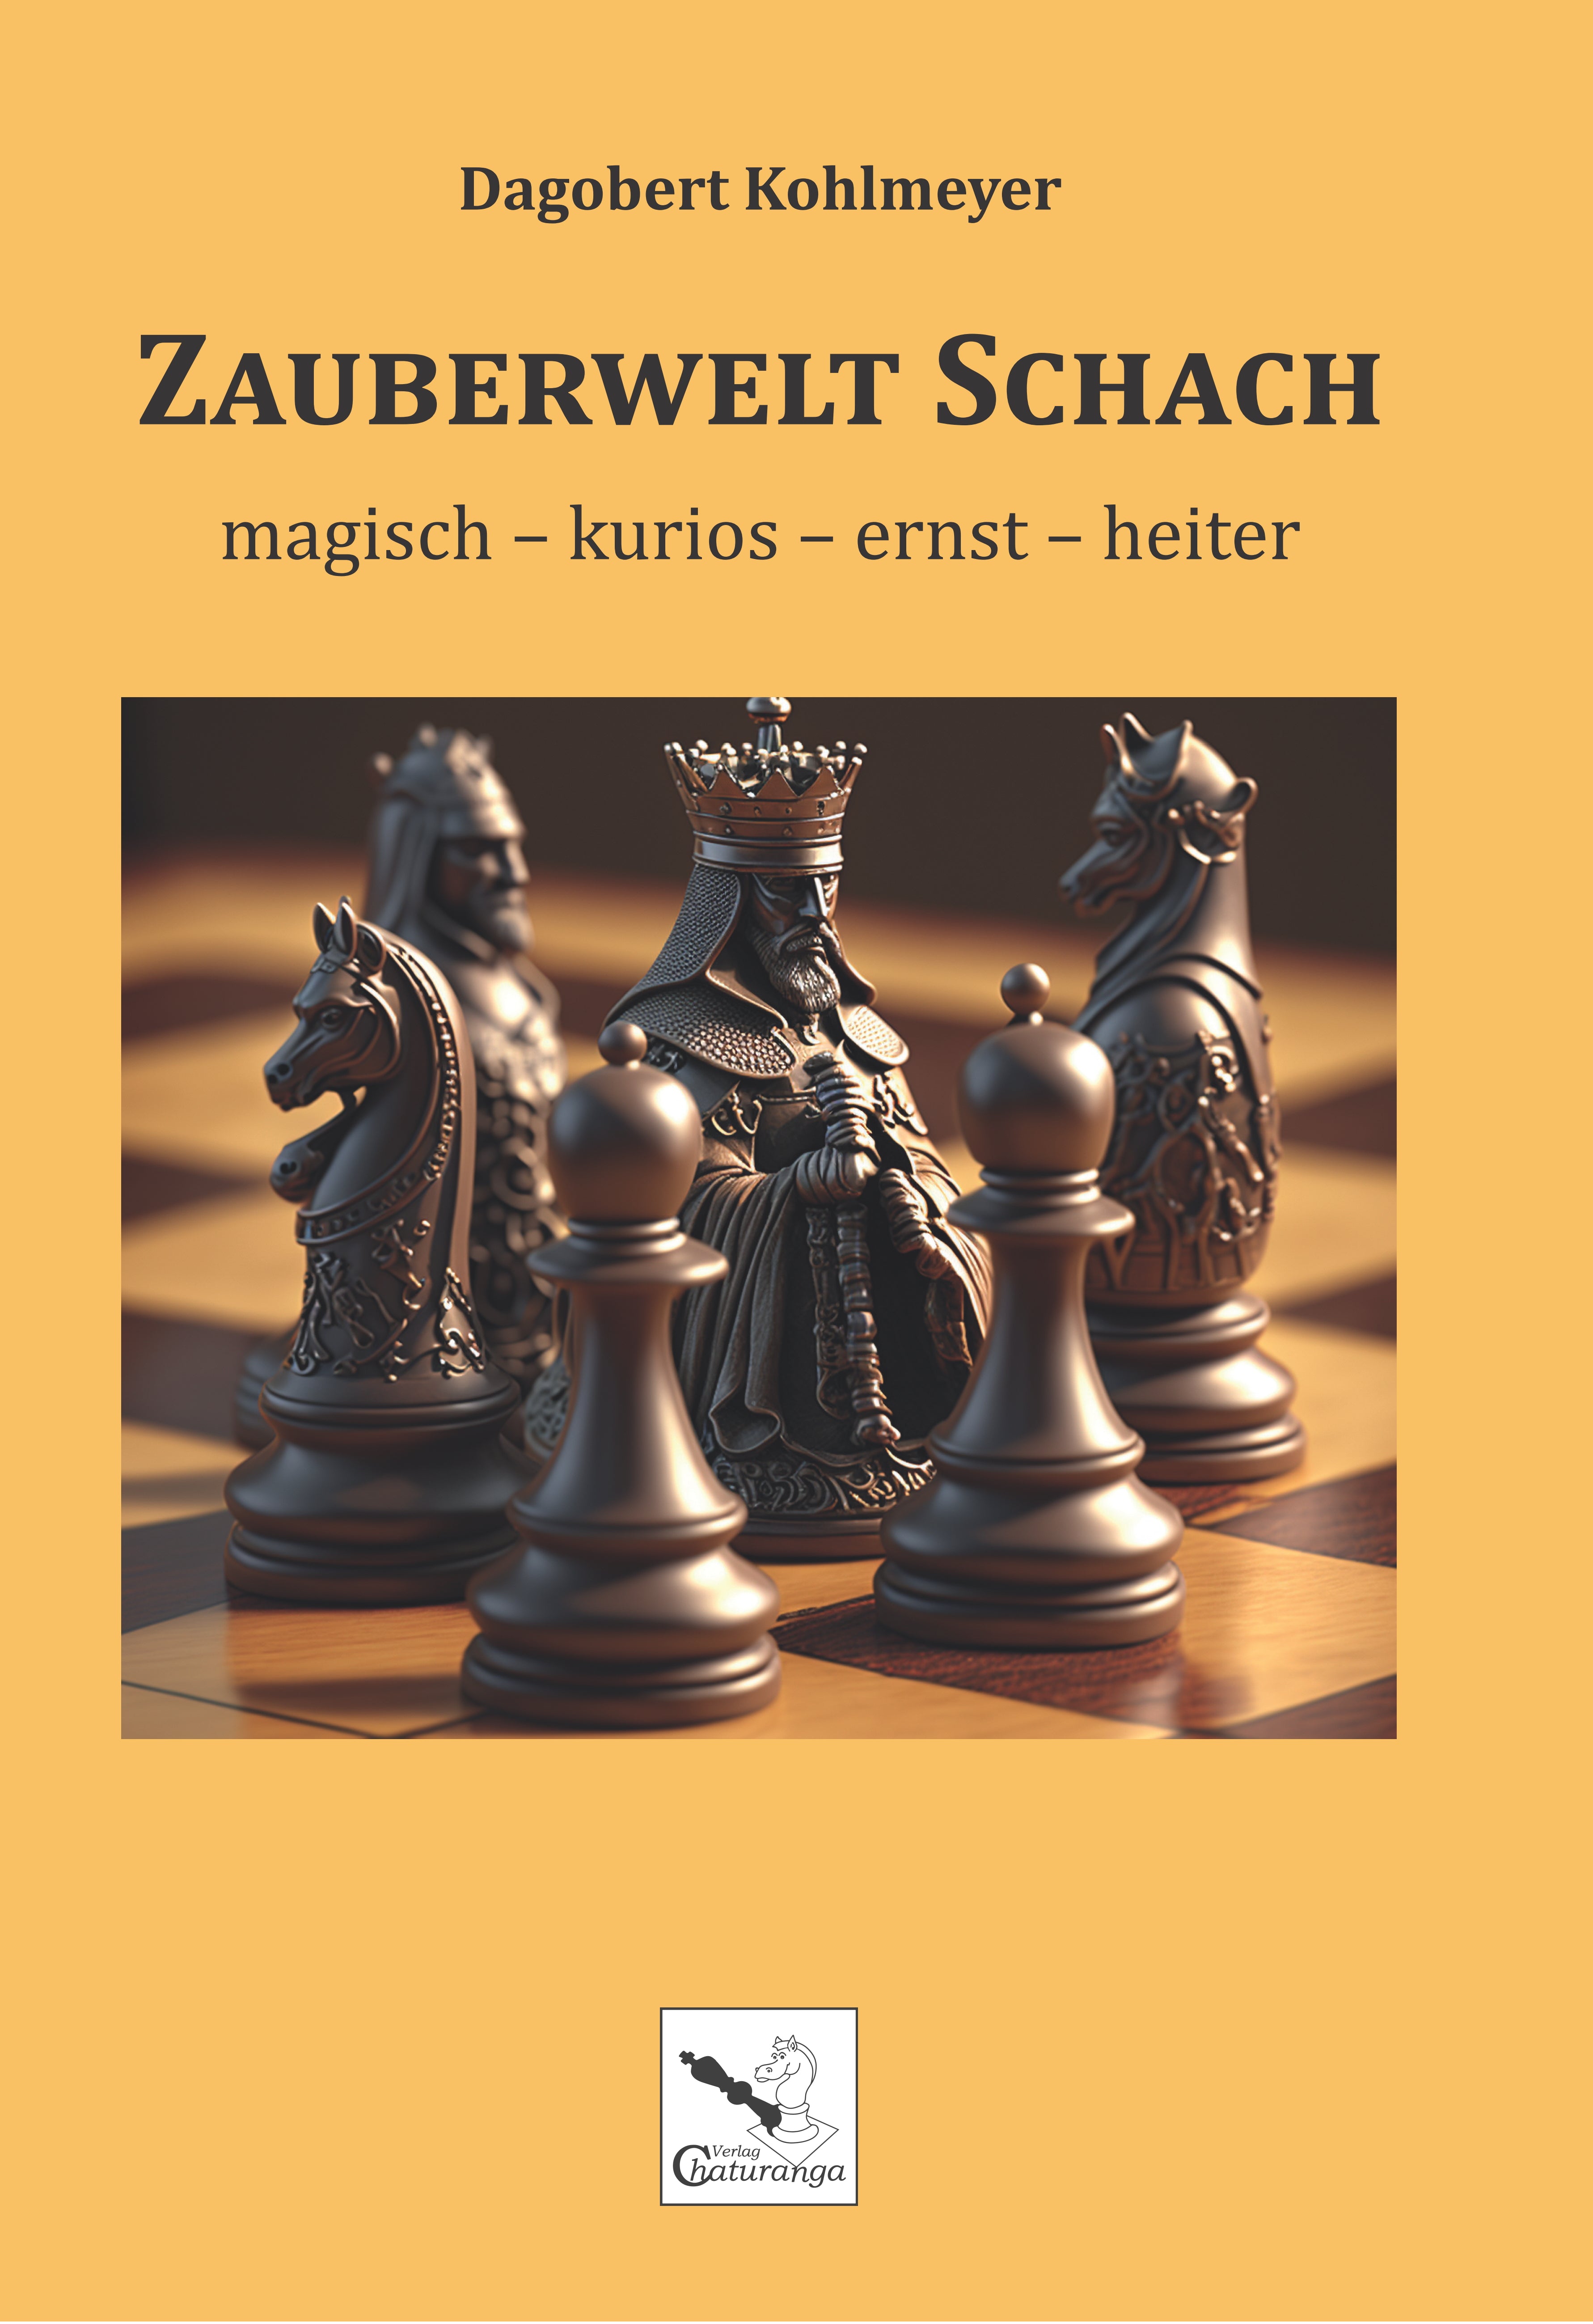 Kohlmeyer: Magical World of Chess